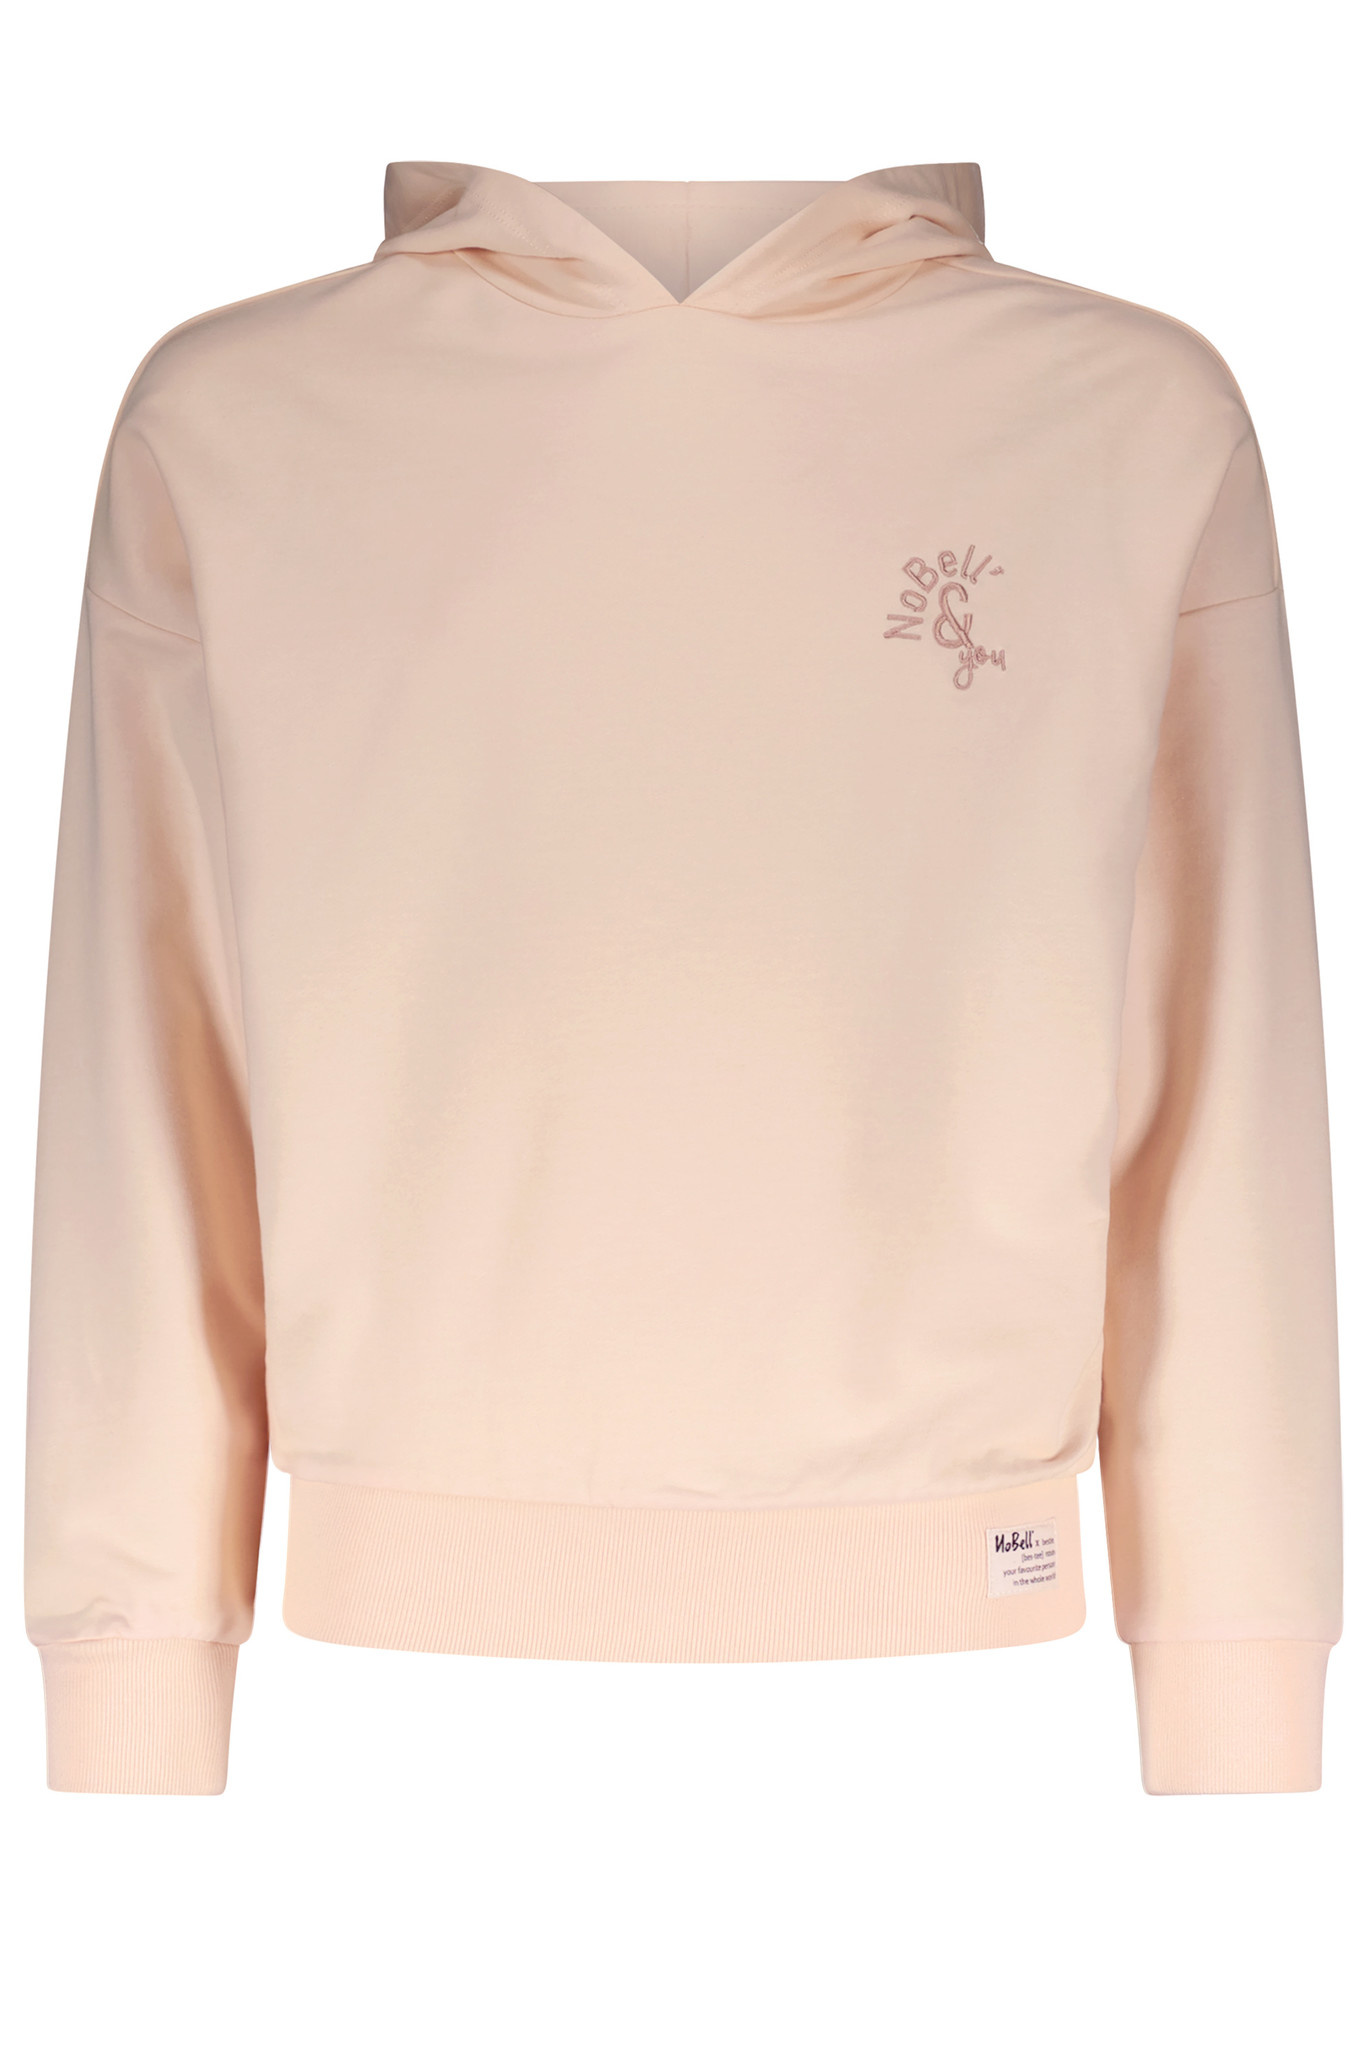 Kumy hooded sweater meisje rosy sand maat 170-176